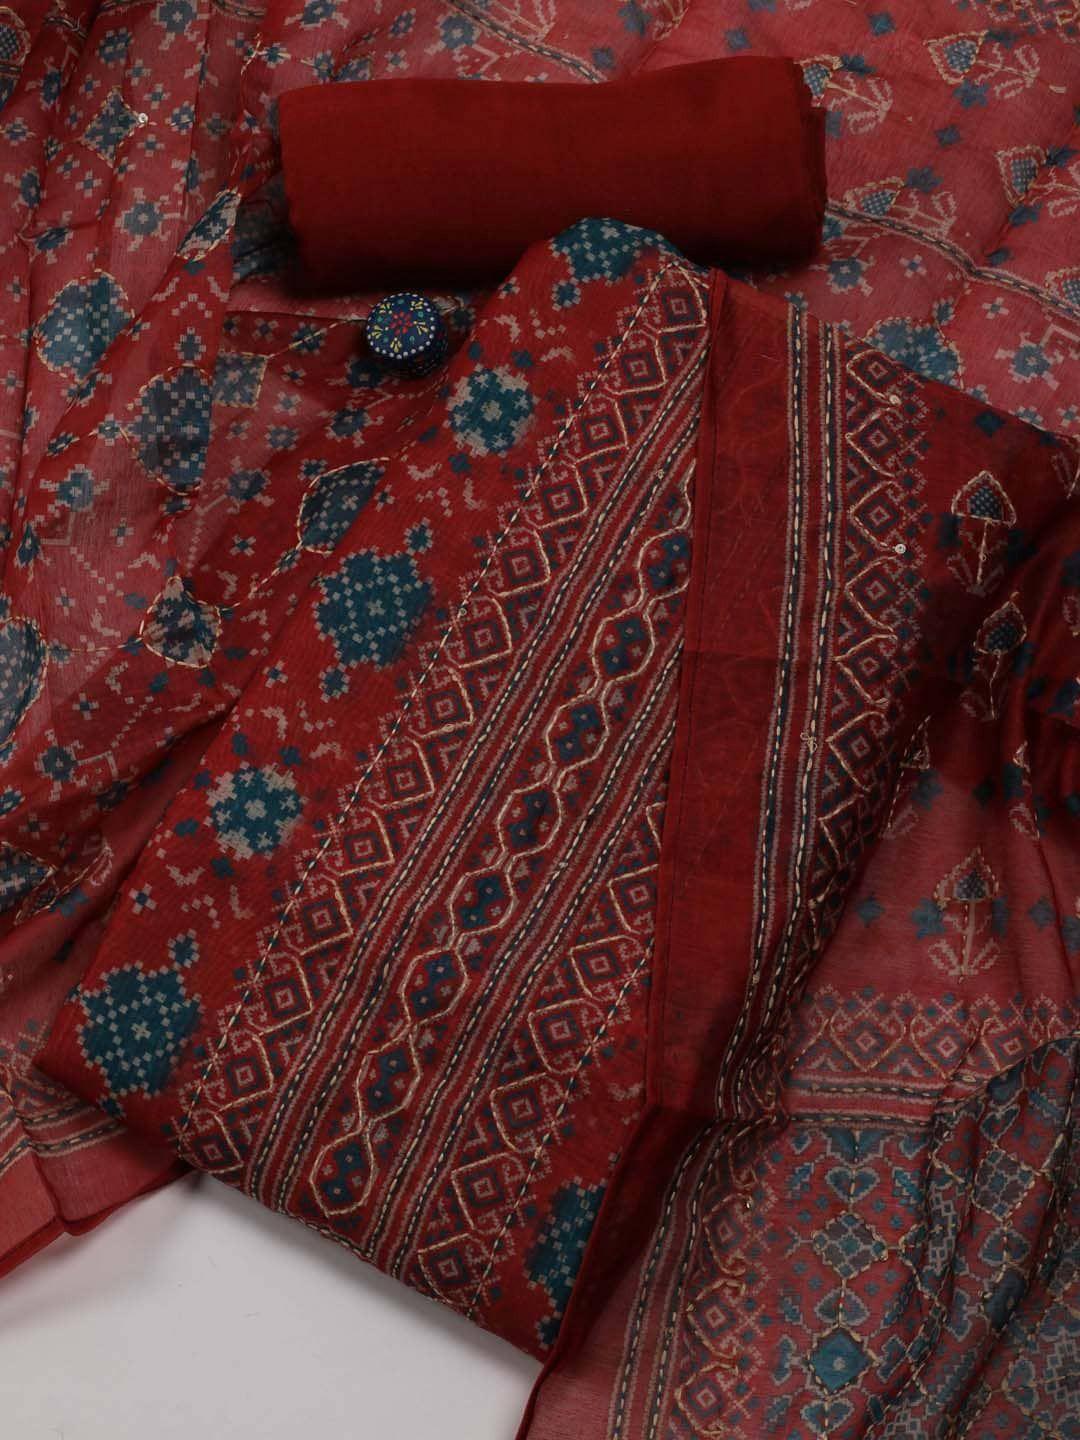 meena bazaar printed chanderi unstitched dress material